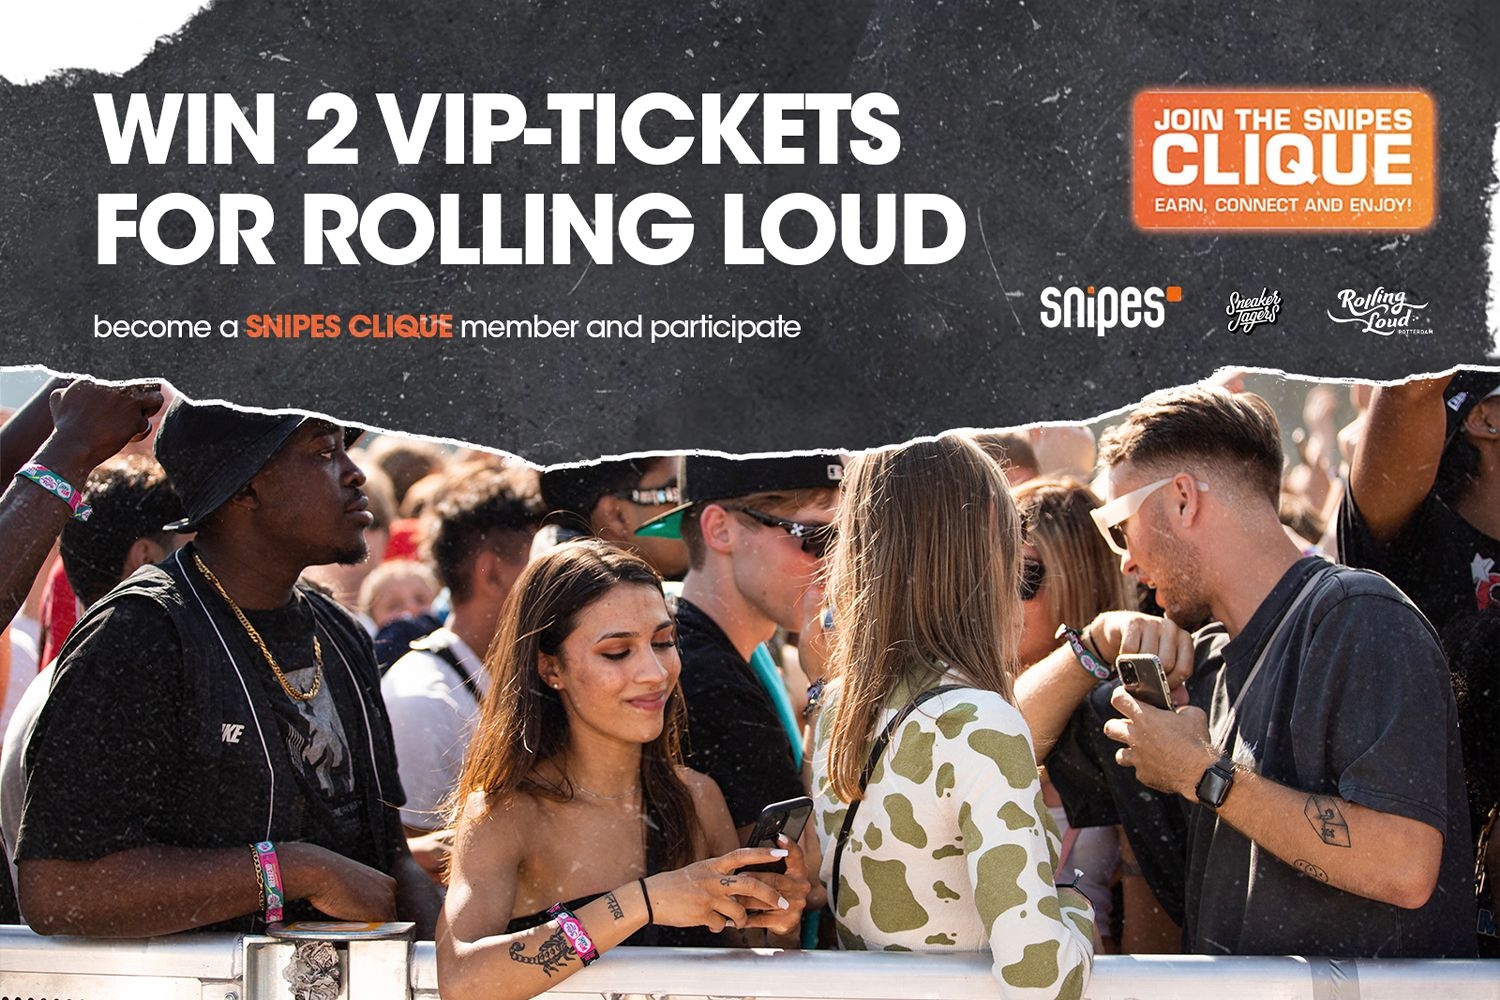 Maak kans op 2 VIP-tickets voor het Rolling Loud festival in Rotterdam